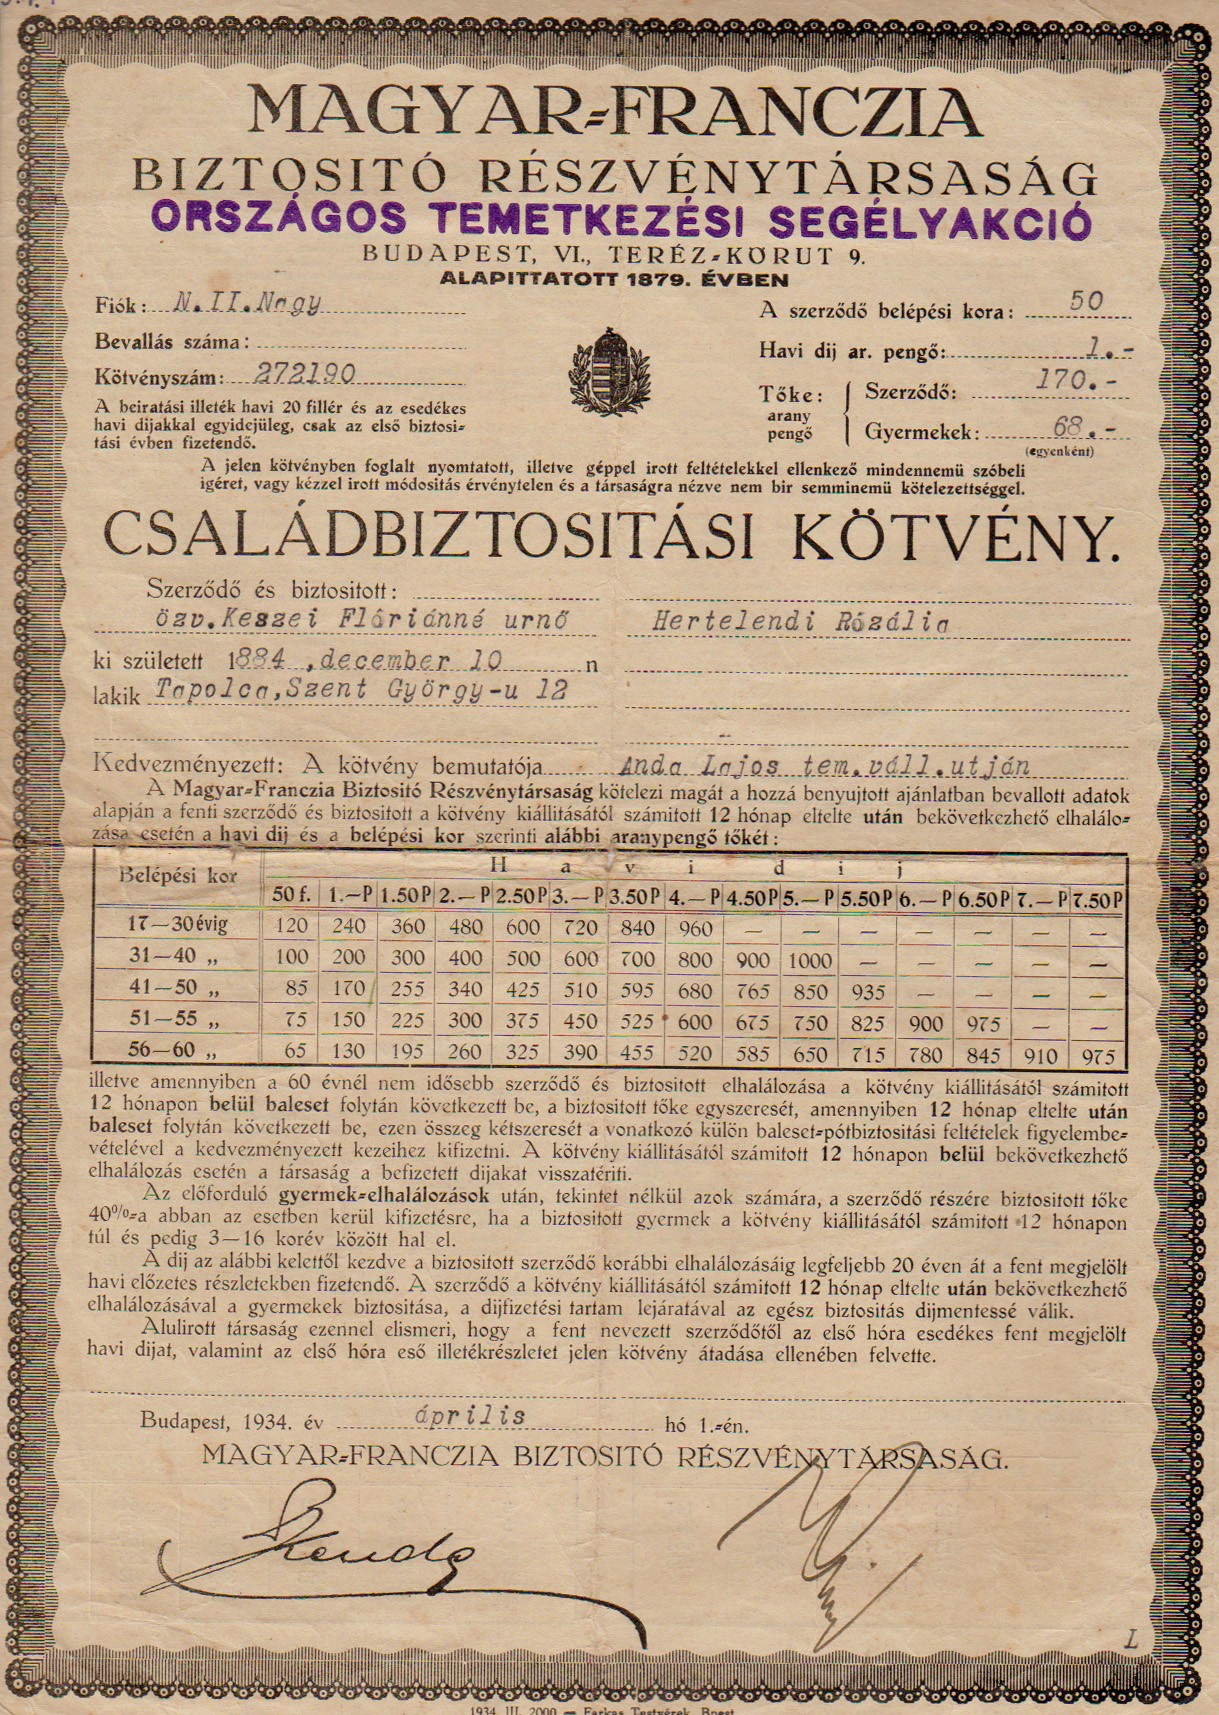 Családbiztosítási kötvény 1934 (Tapolcai Városi Múzeum CC BY-NC-SA)